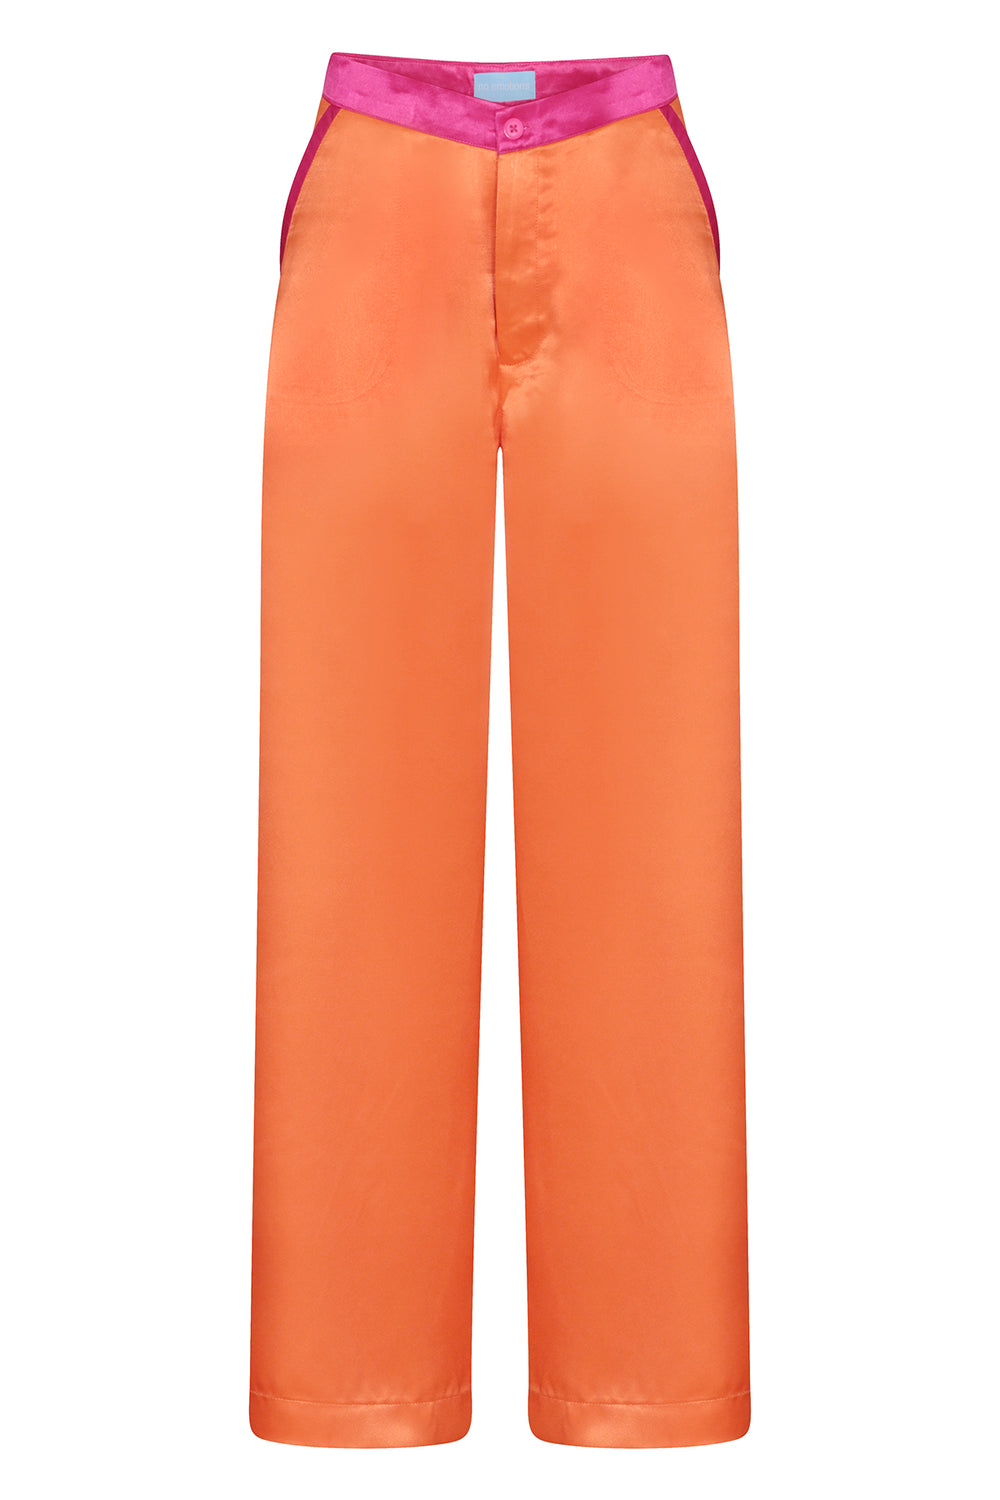 Orange Silk Trousers - noemotions-store